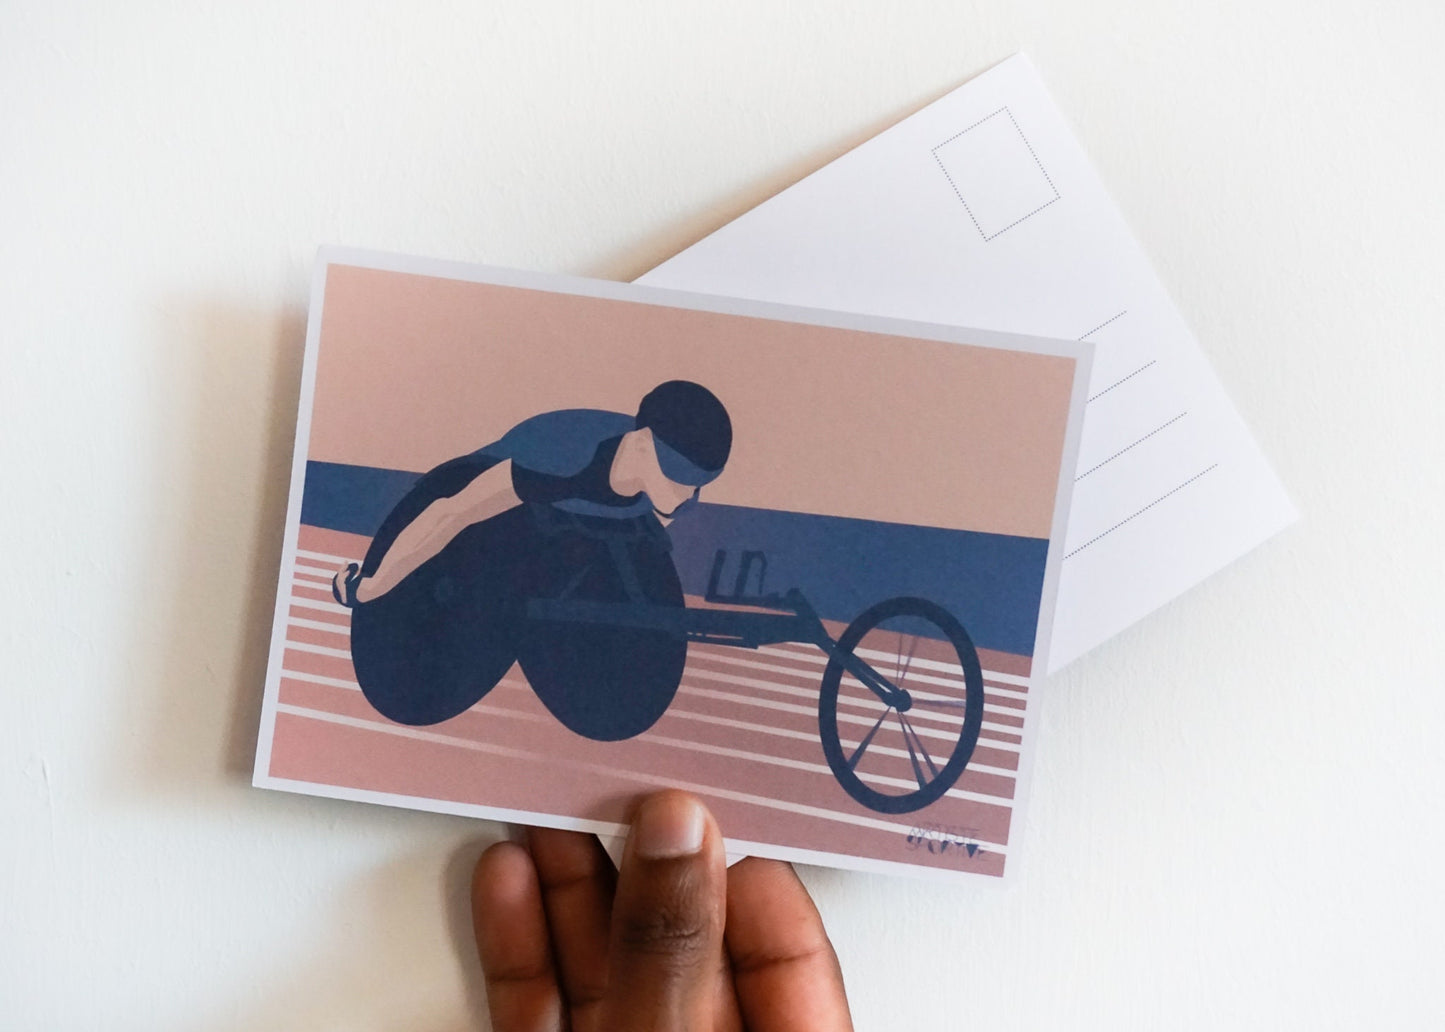 Carte d'athlétisme handisport ou para athlétisme en fauteuil roulant pour un athlète ou un coach d'athlétisme | Carte athlétisme | Artiste Sportive